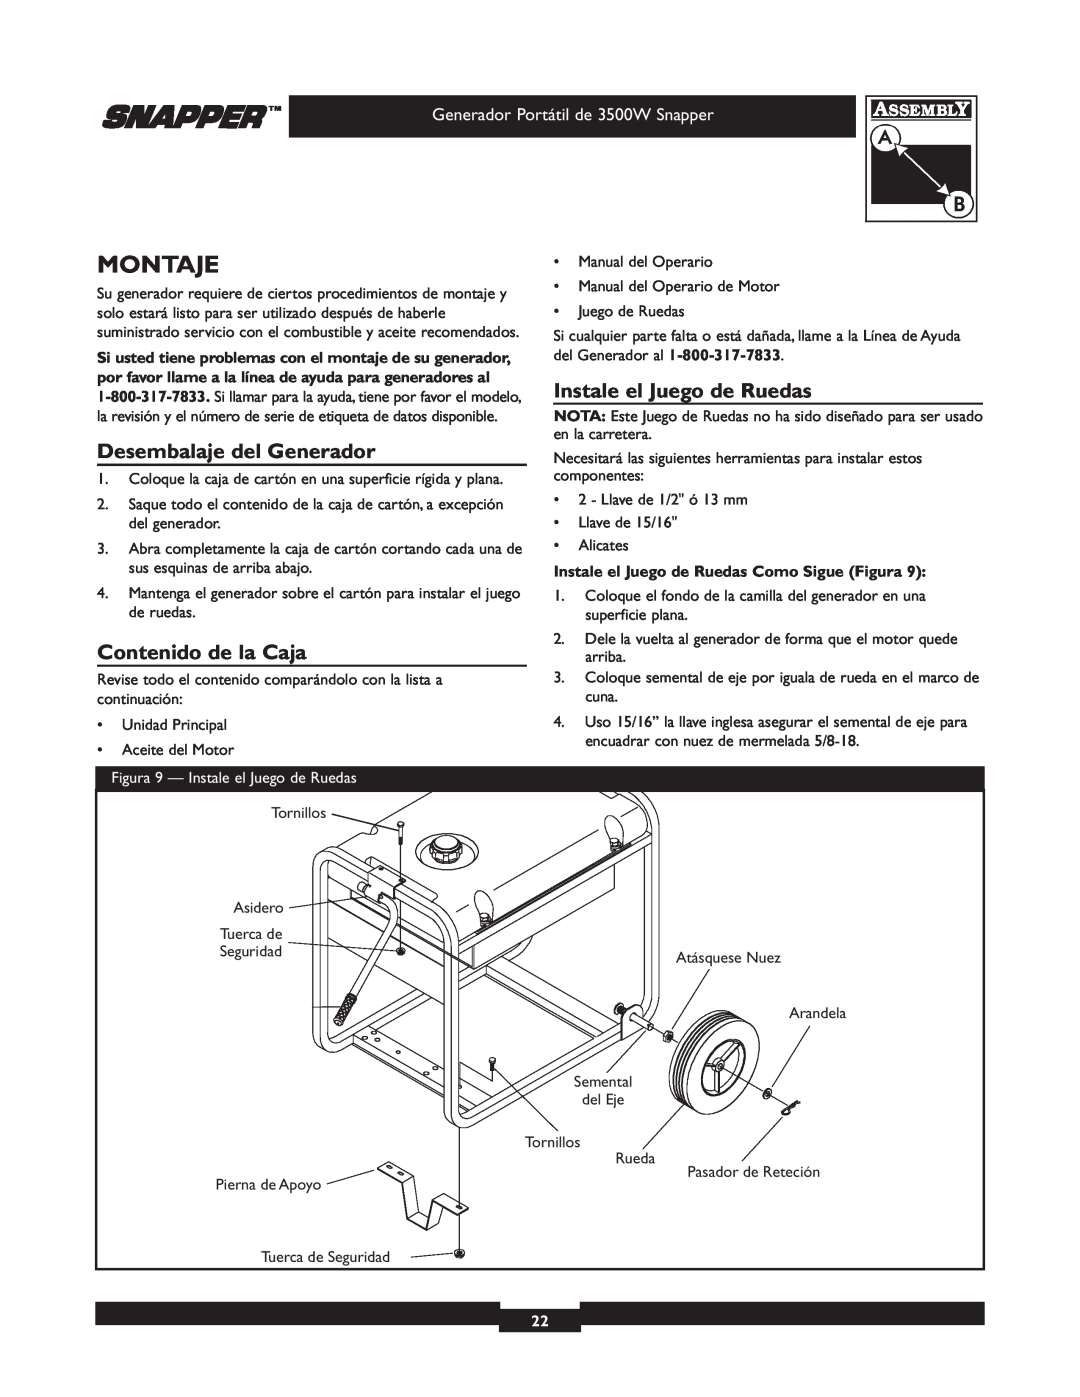 Snapper 030214 manual Montaje, Instale el Juego de Ruedas, Desembalaje del Generador, Contenido de la Caja 